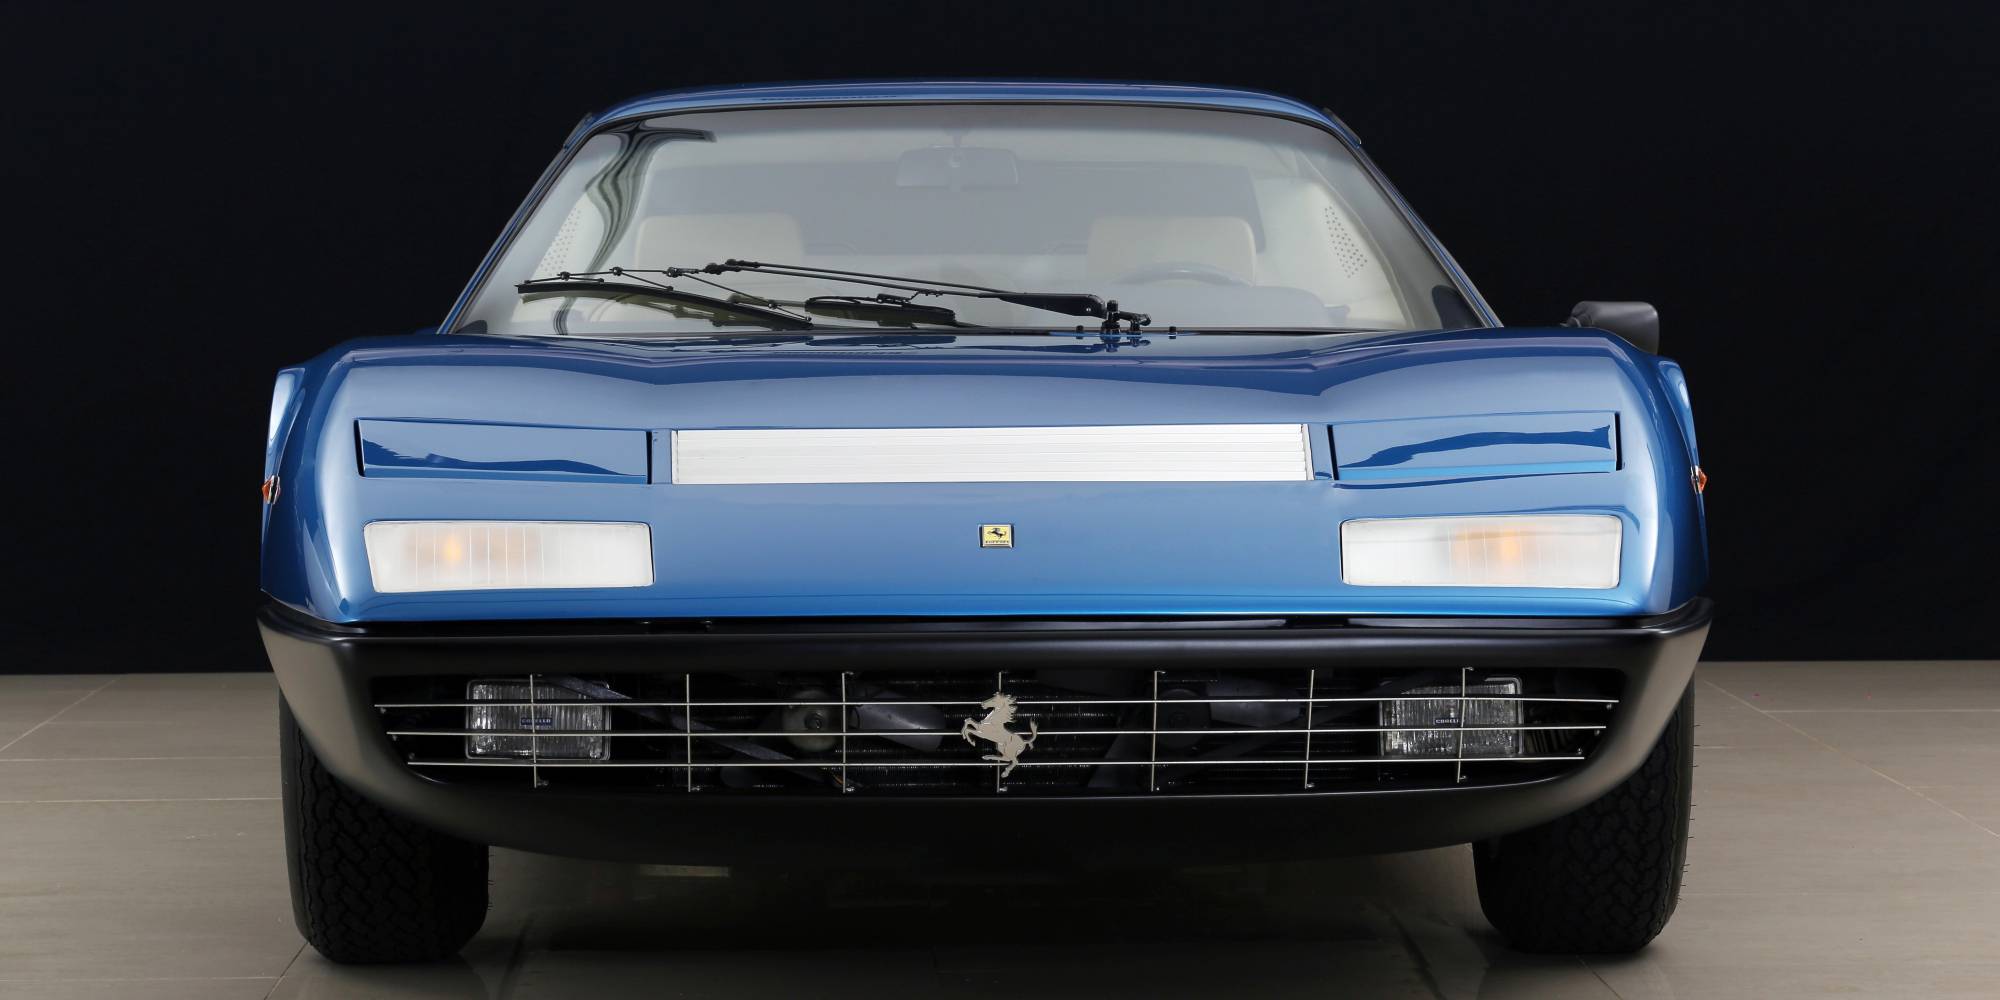 1974年式 フェラーリ 365 GT/4 BB|ビンゴスポーツ/希少車、 絶版車 